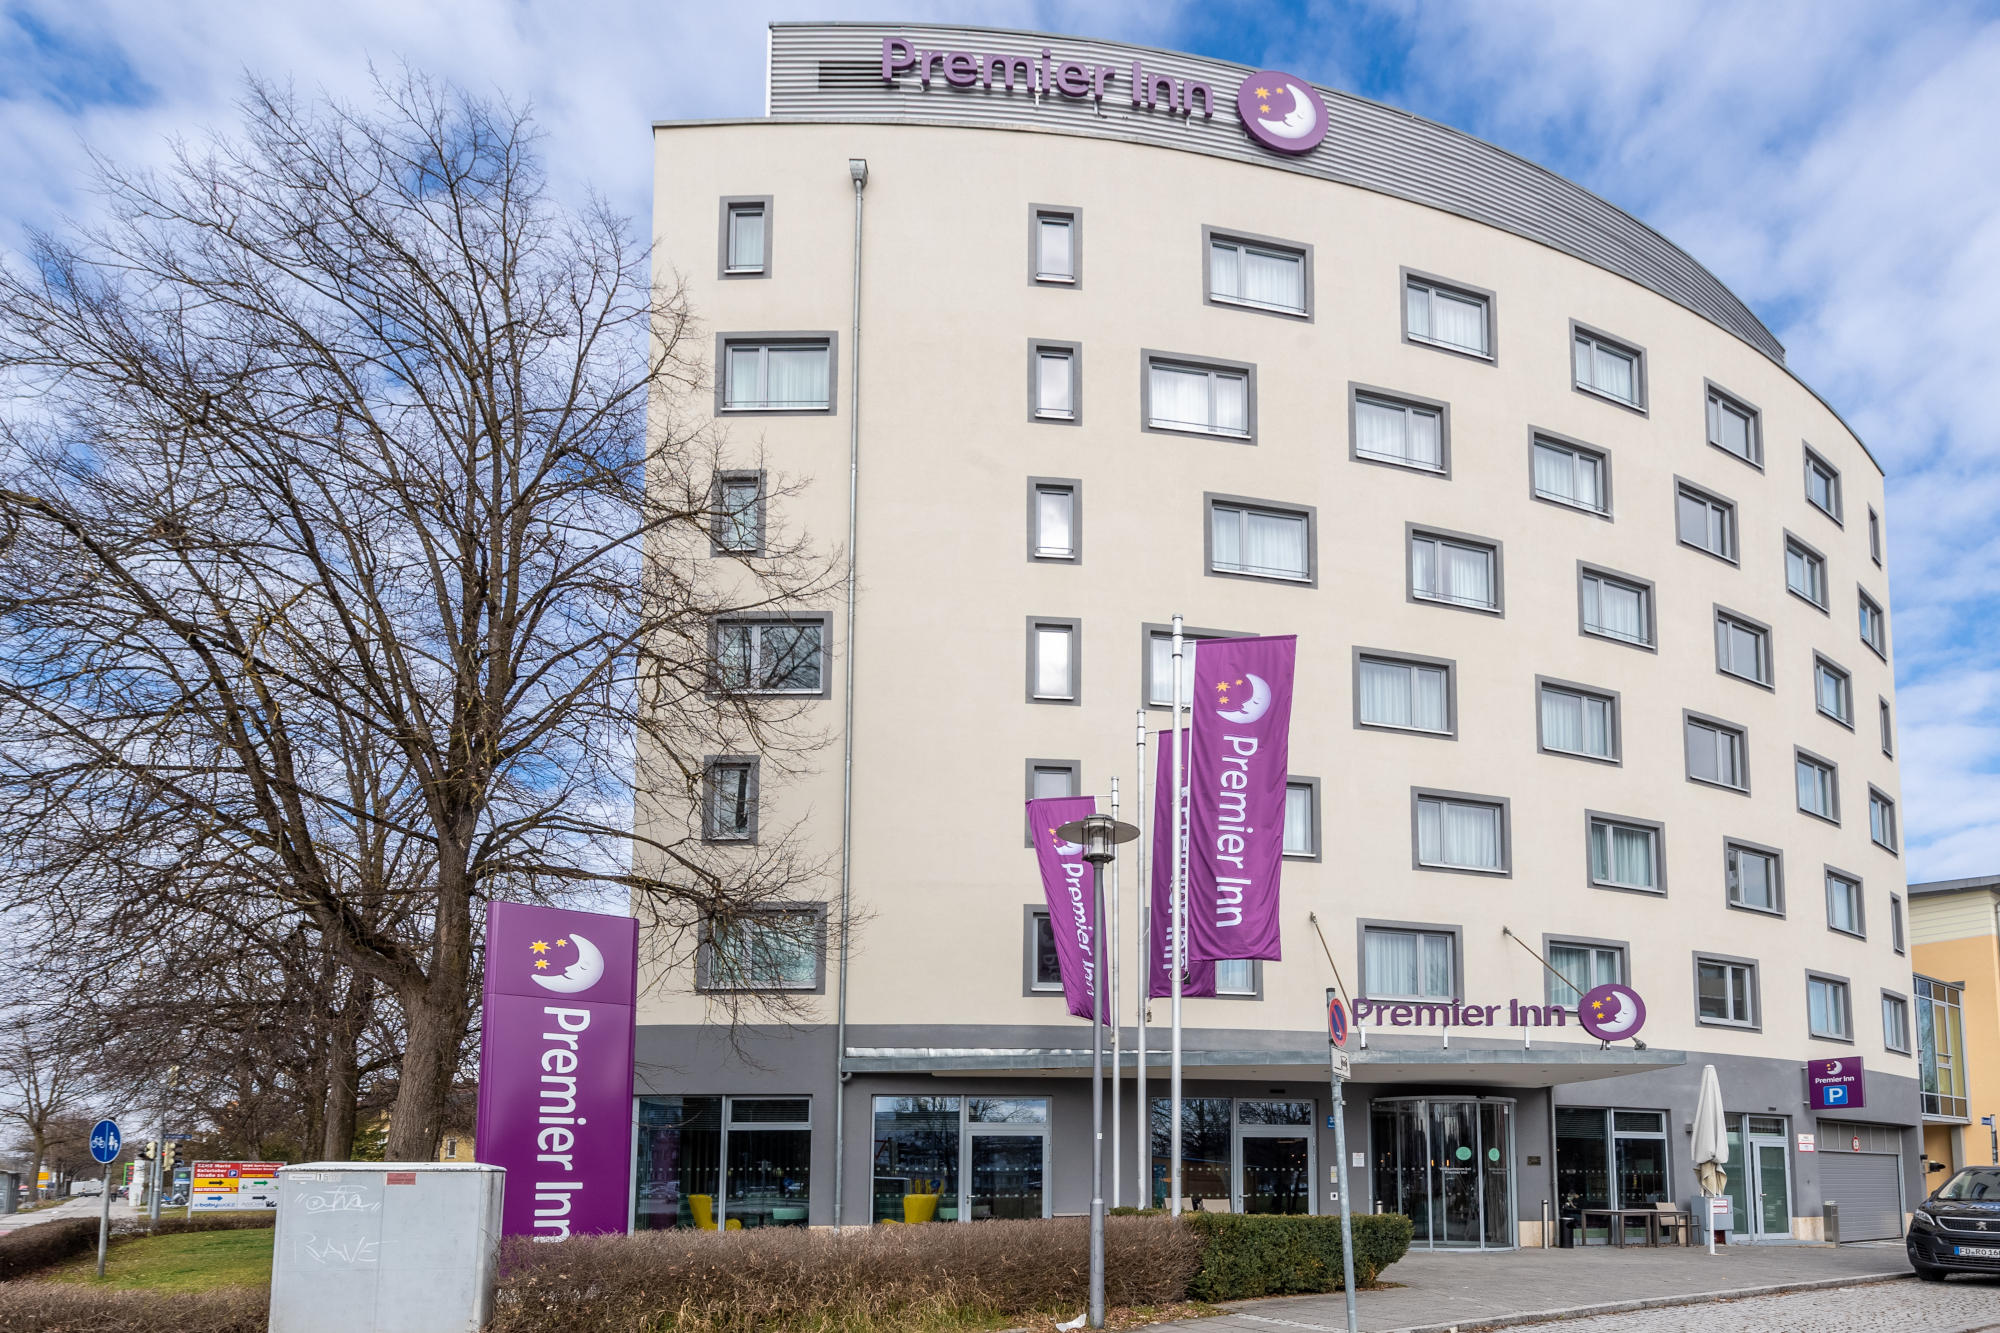 Kundenbild groß 2 Premier Inn Munich Messe hotel